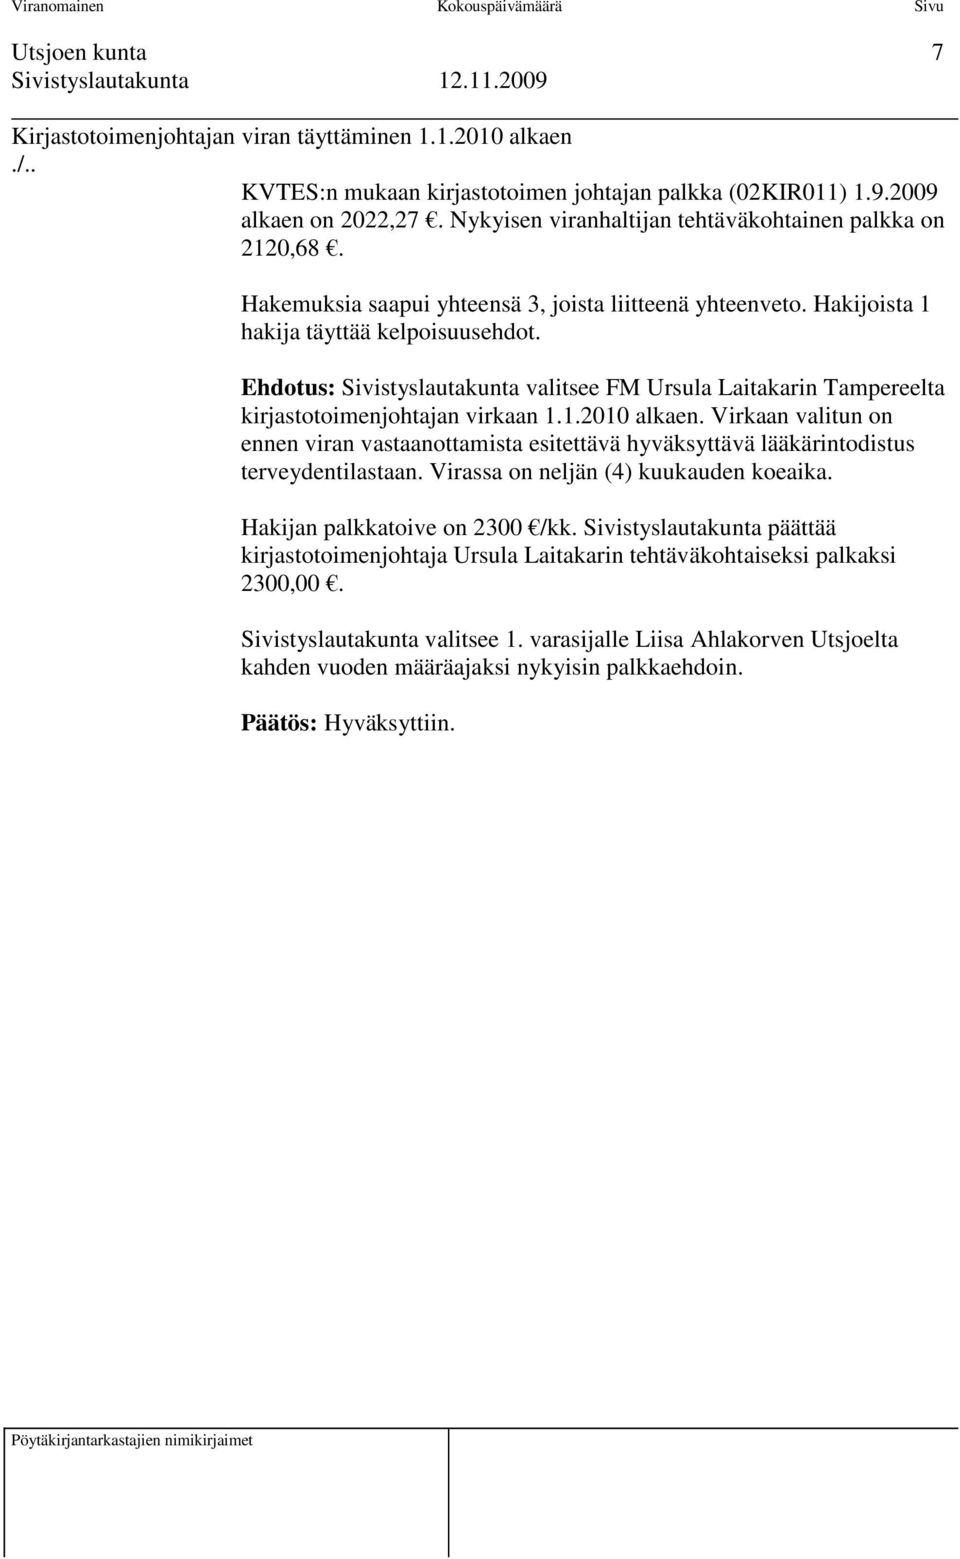 Ehdotus: Sivistyslautakunta valitsee FM Ursula Laitakarin Tampereelta kirjastotoimenjohtajan virkaan 1.1.2010 alkaen.